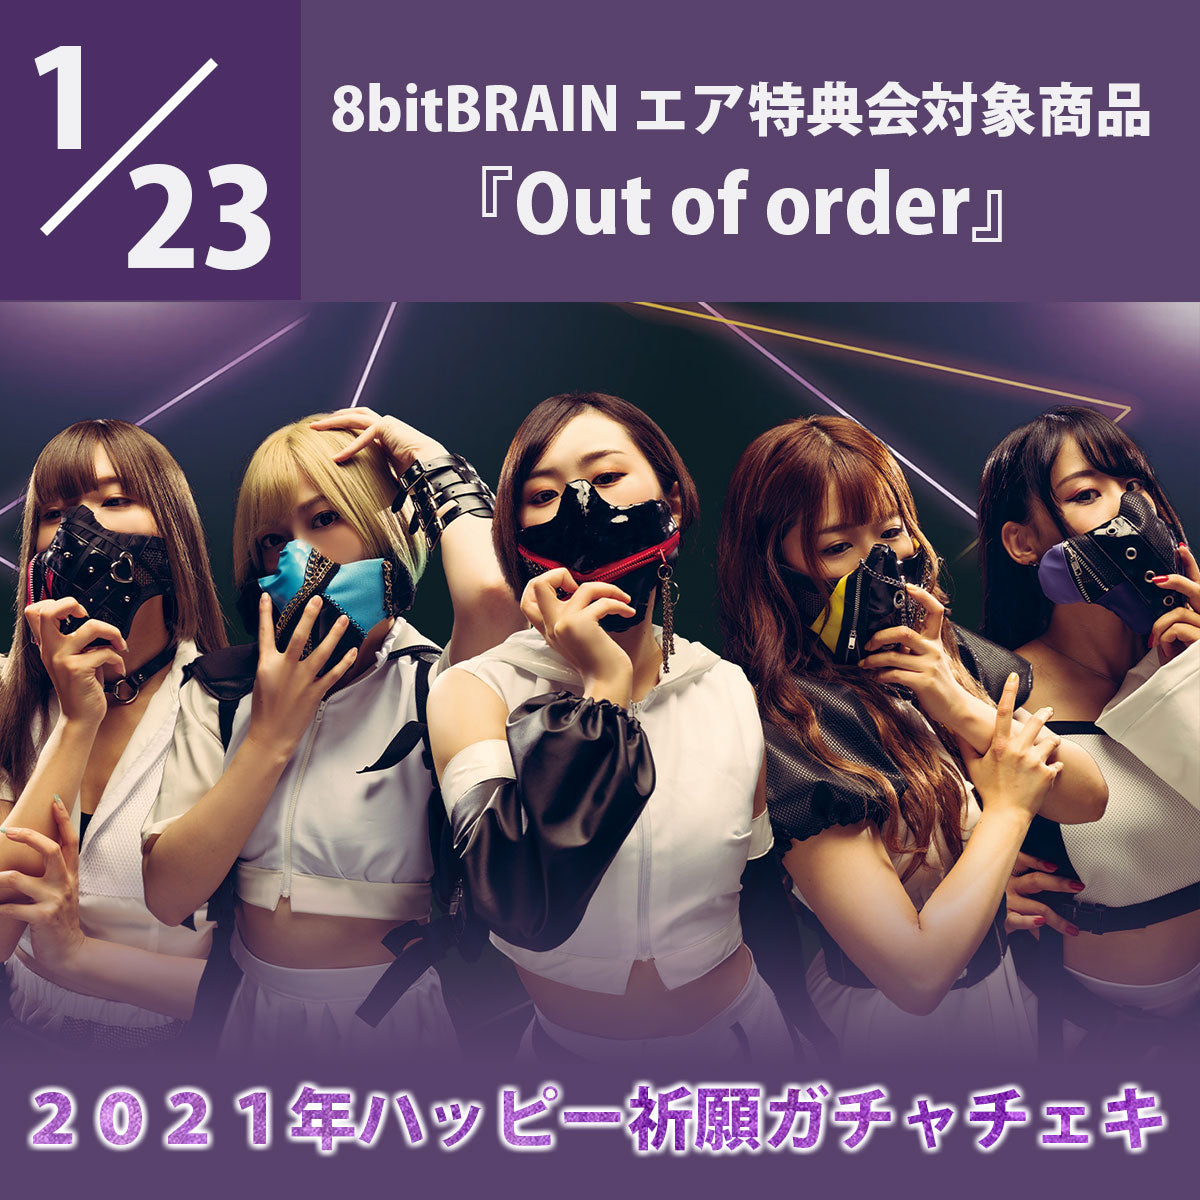 【特典会対象商品】1/23(土) 8bitBRAIN CDご予約3枚セット